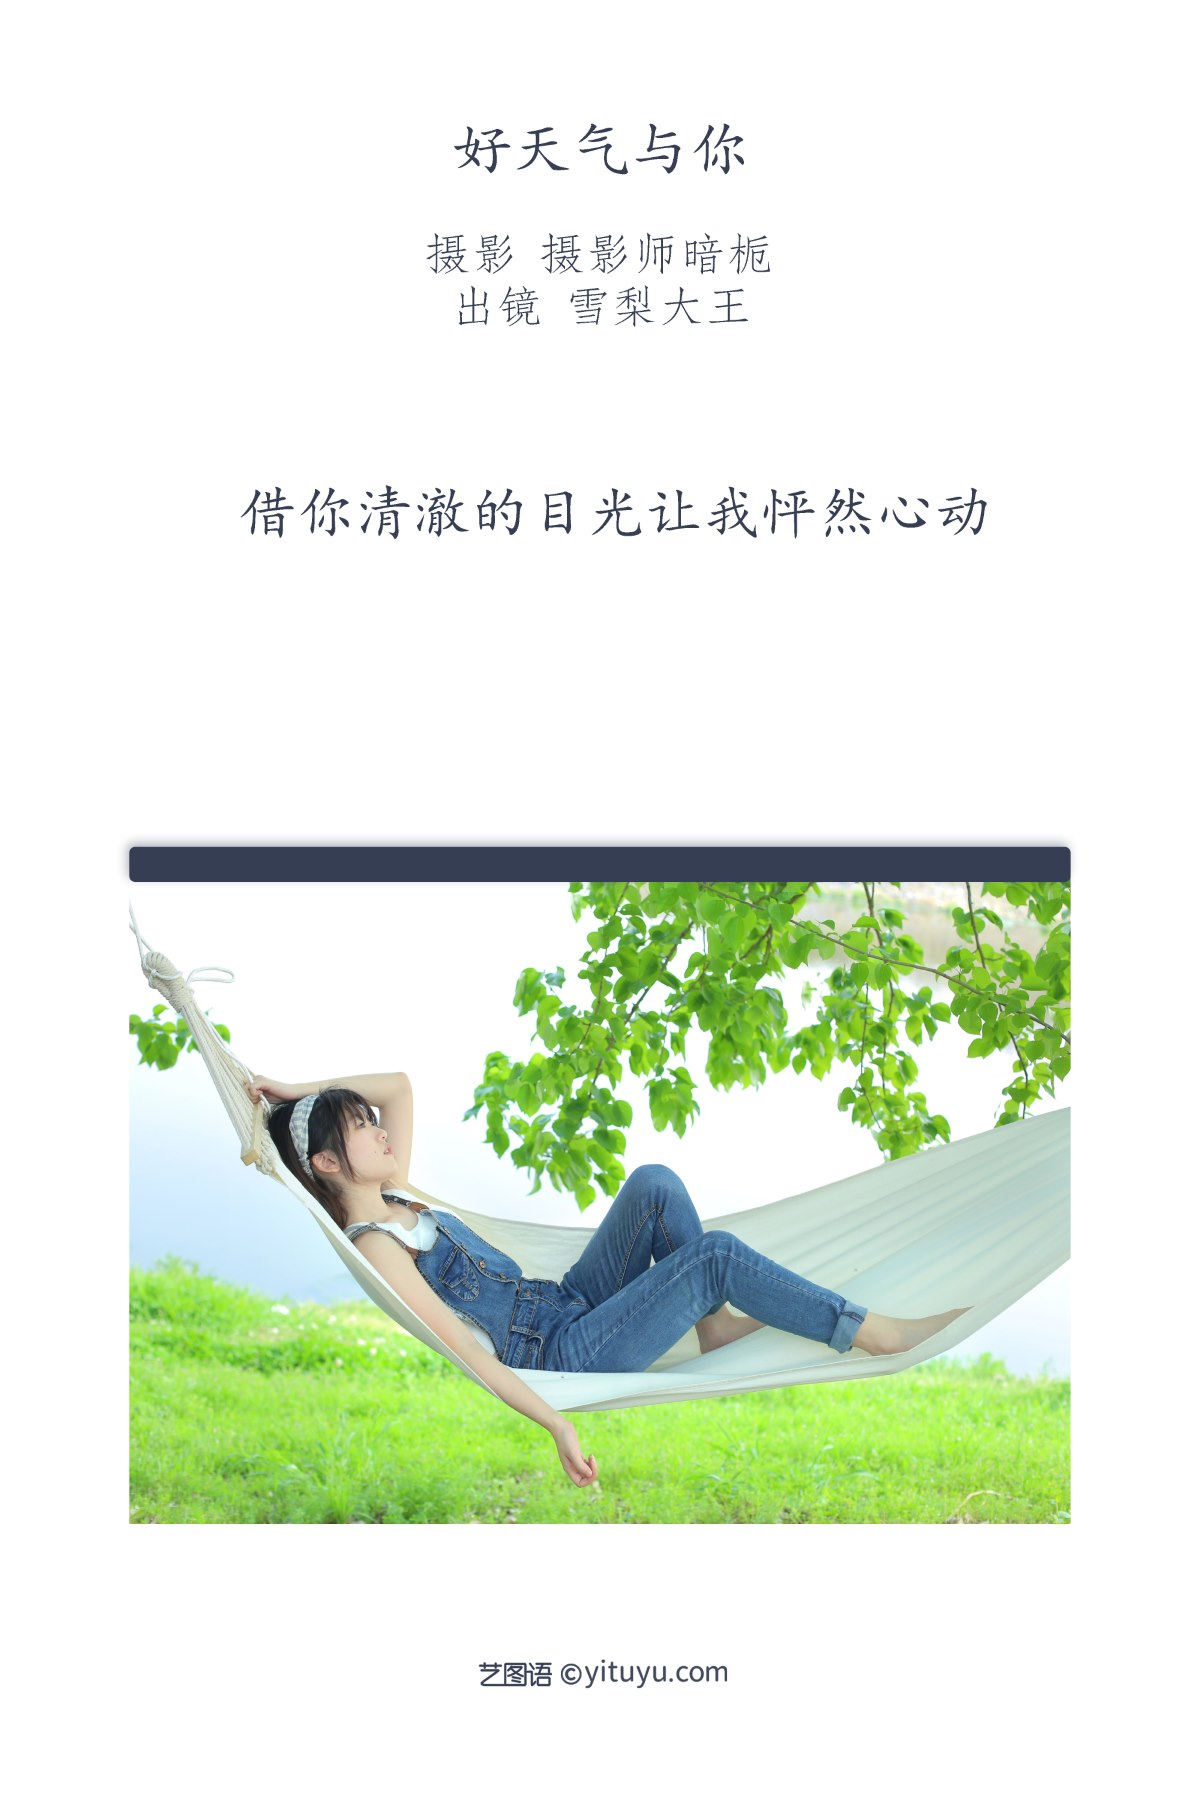 YiTuYu艺图语 Vol 2369 Xue Li Da Wang 0001 7901031664.jpg